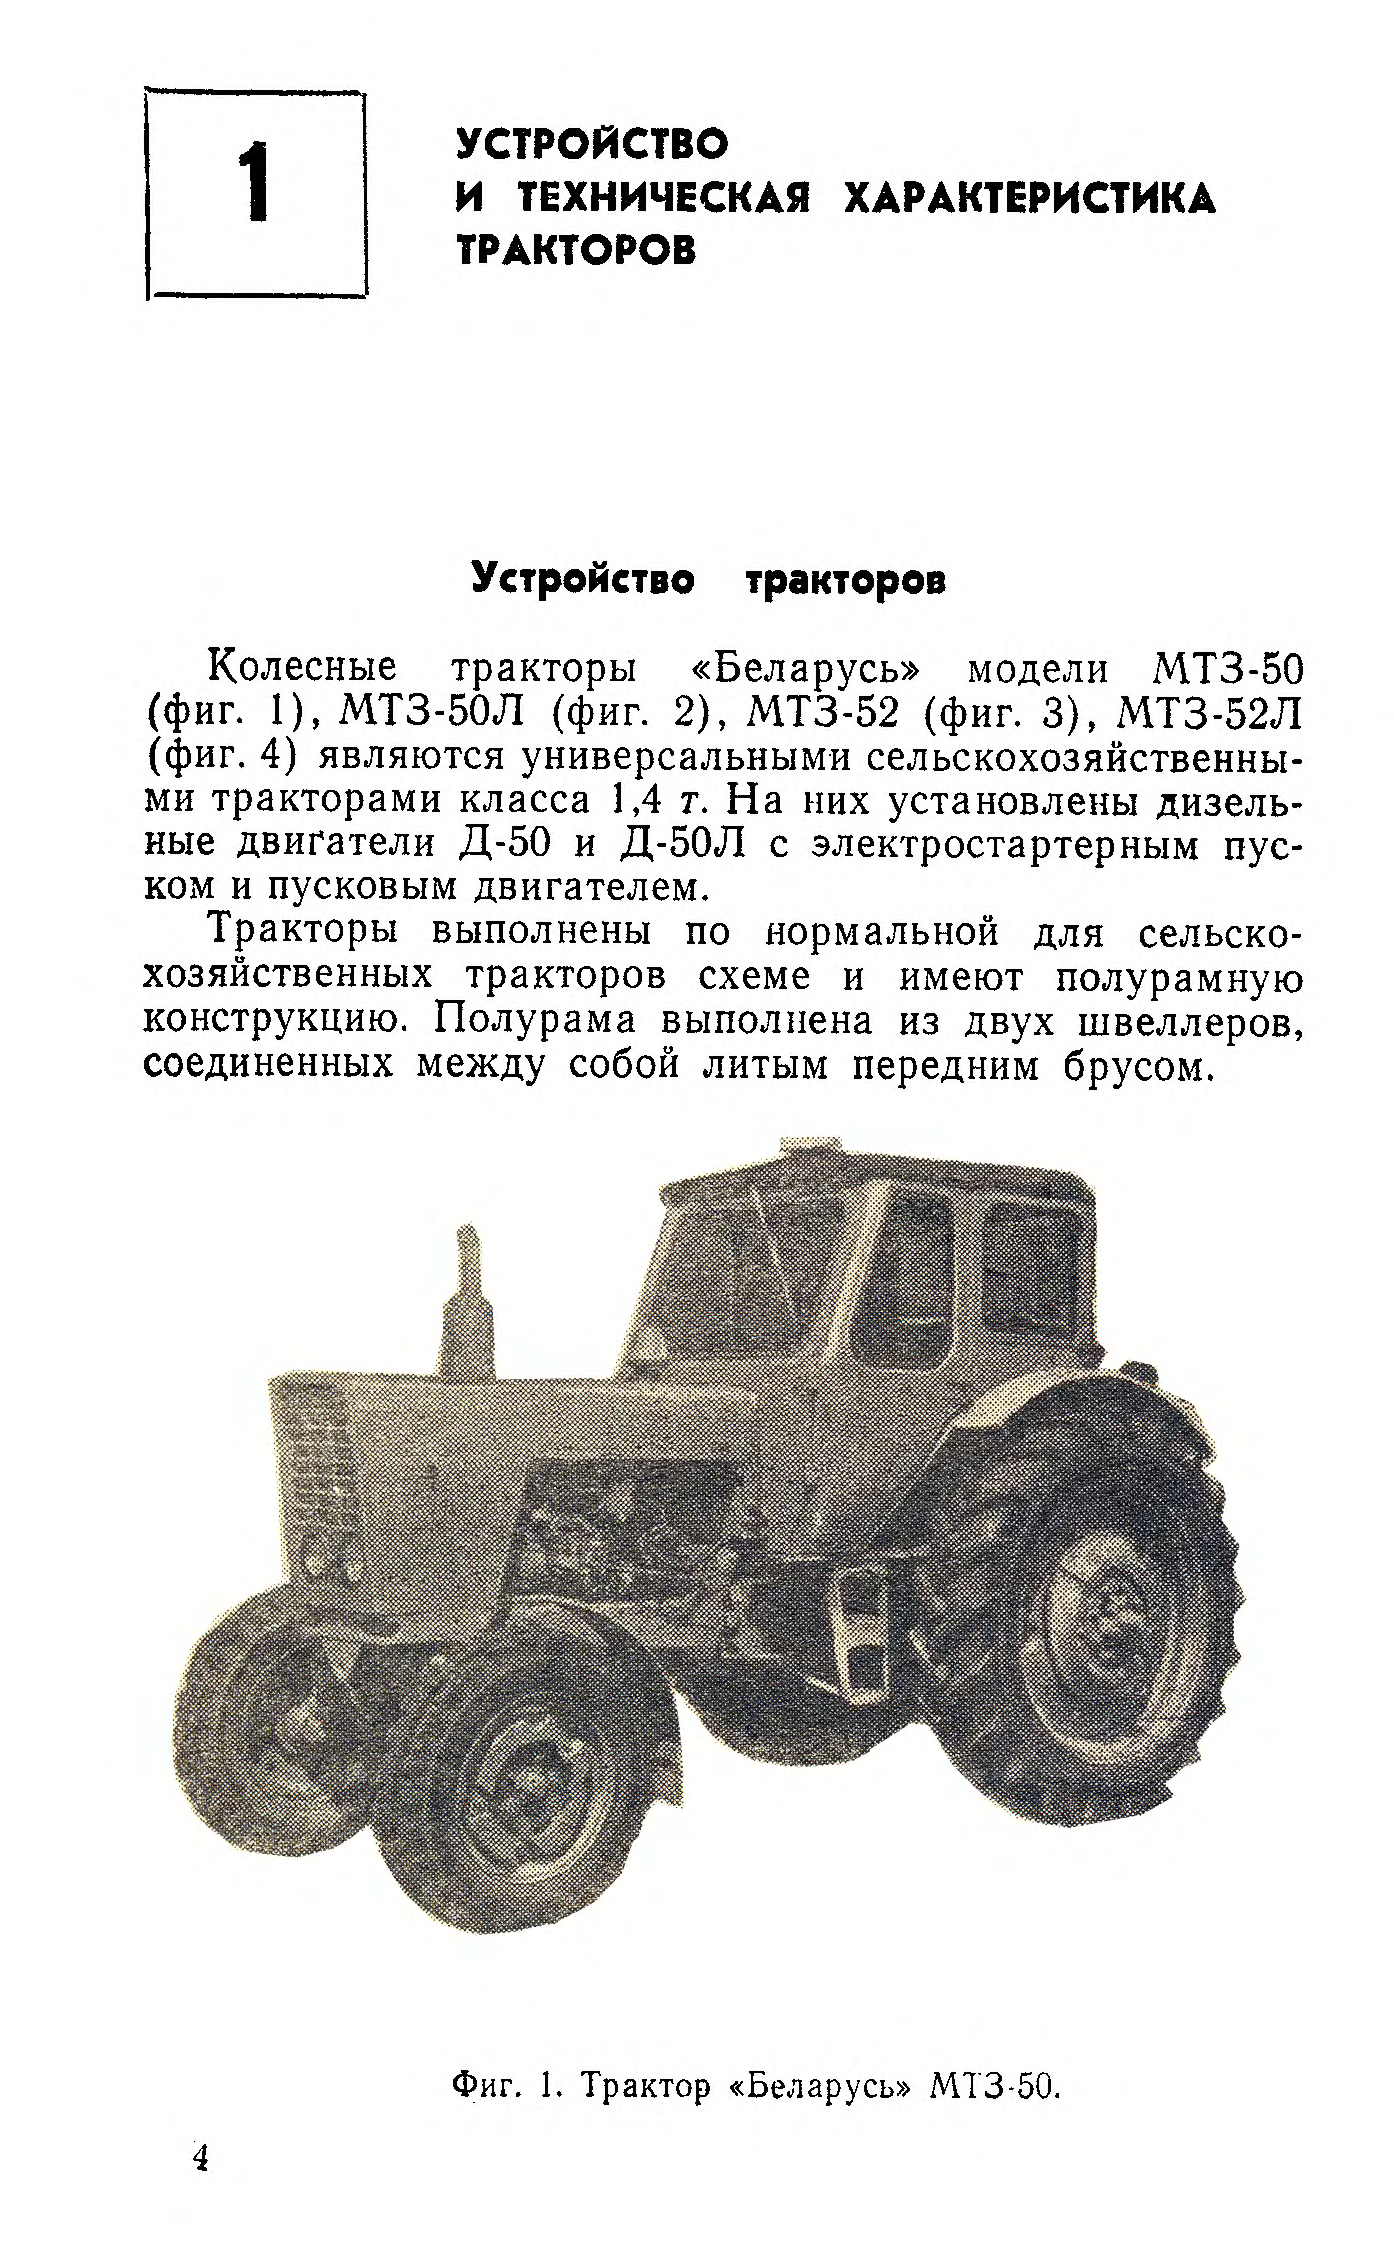 Мтз-50